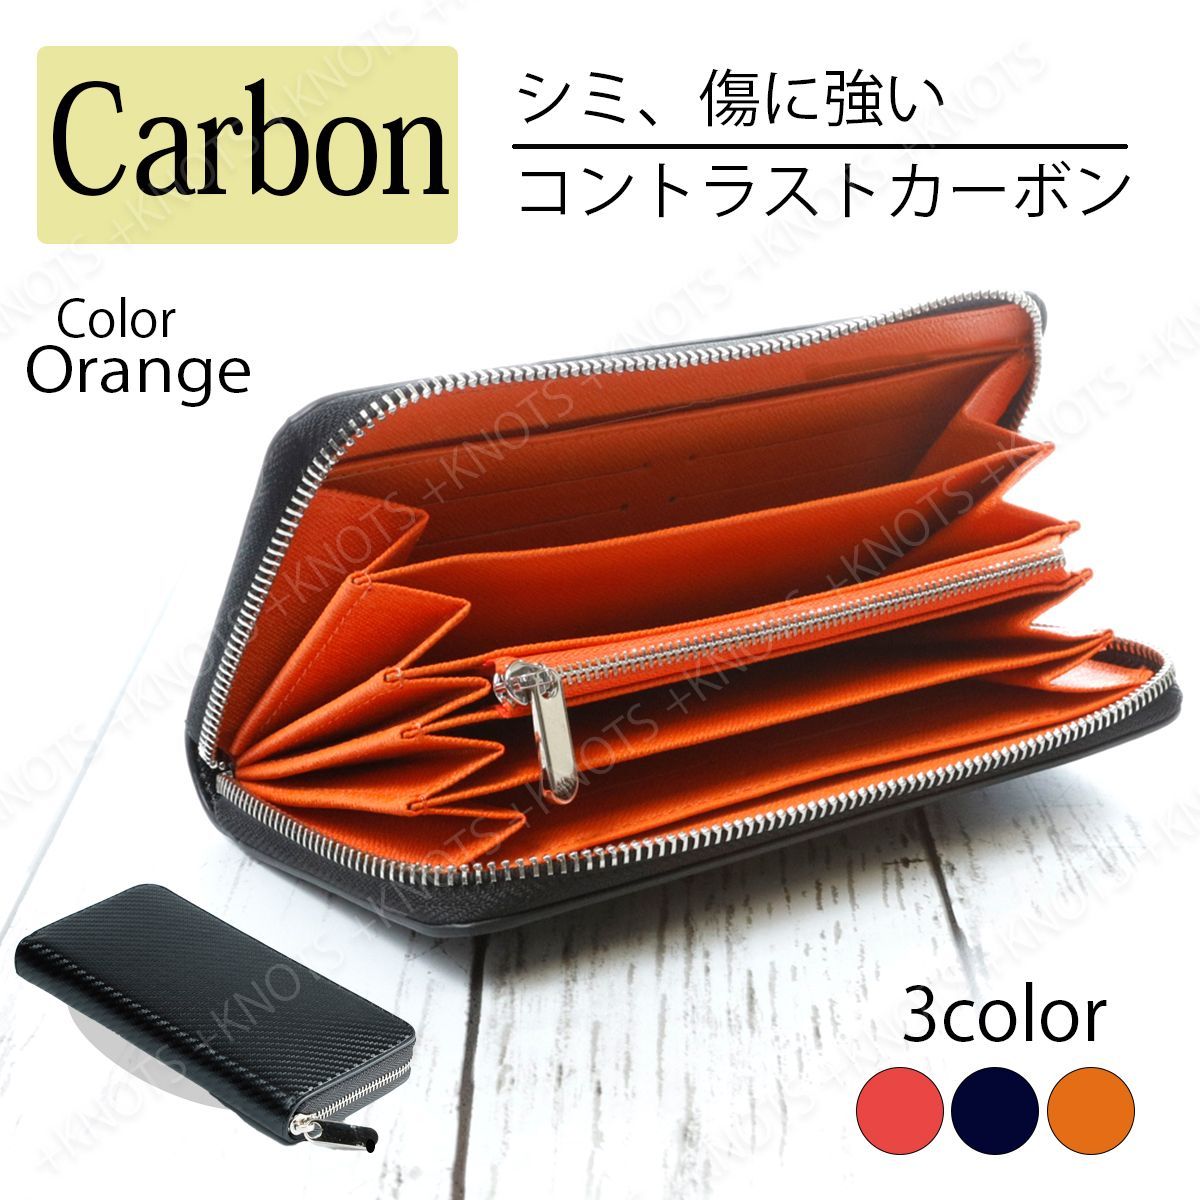 使いやすいメンズ長財布 カーボンレザー 大容量☆ブラック+オレンジ